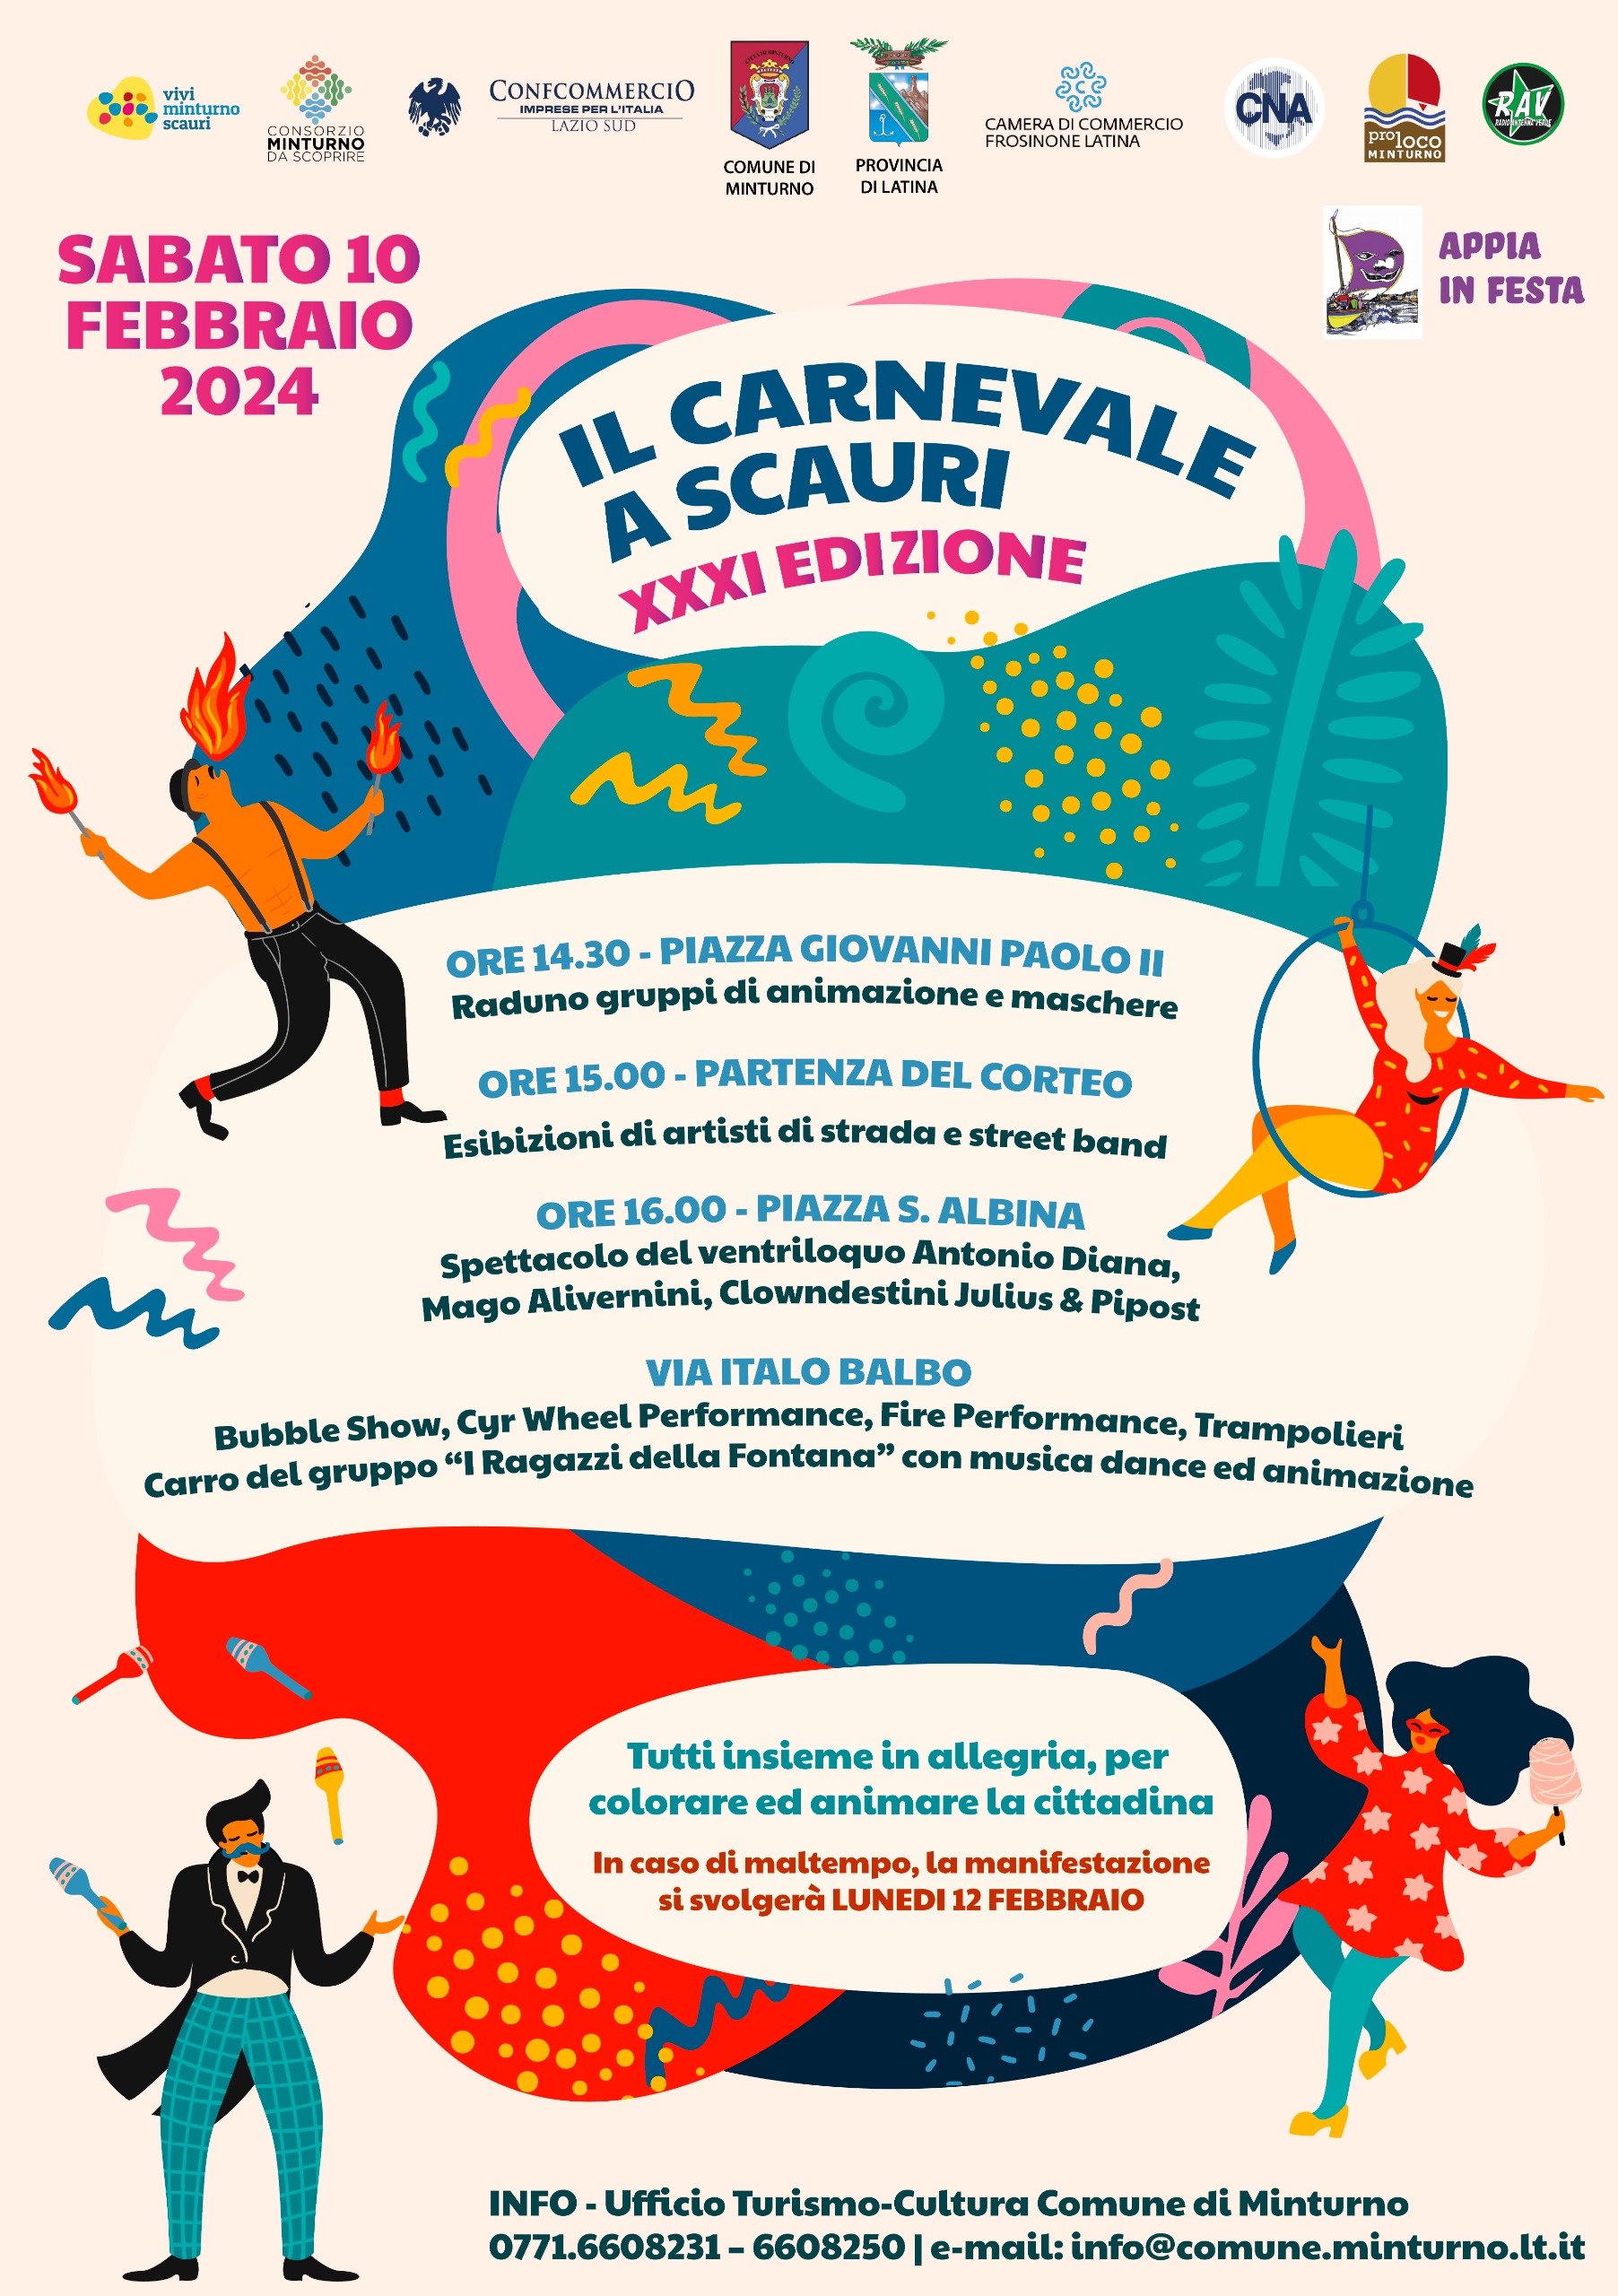 COMUNICATO STAMPA
02.02.2024
	
	
Progetto “Appia in festa”
Sabato 10 febbraio la sfilata per la XXXI edizione del “Carnevale a Scauri”